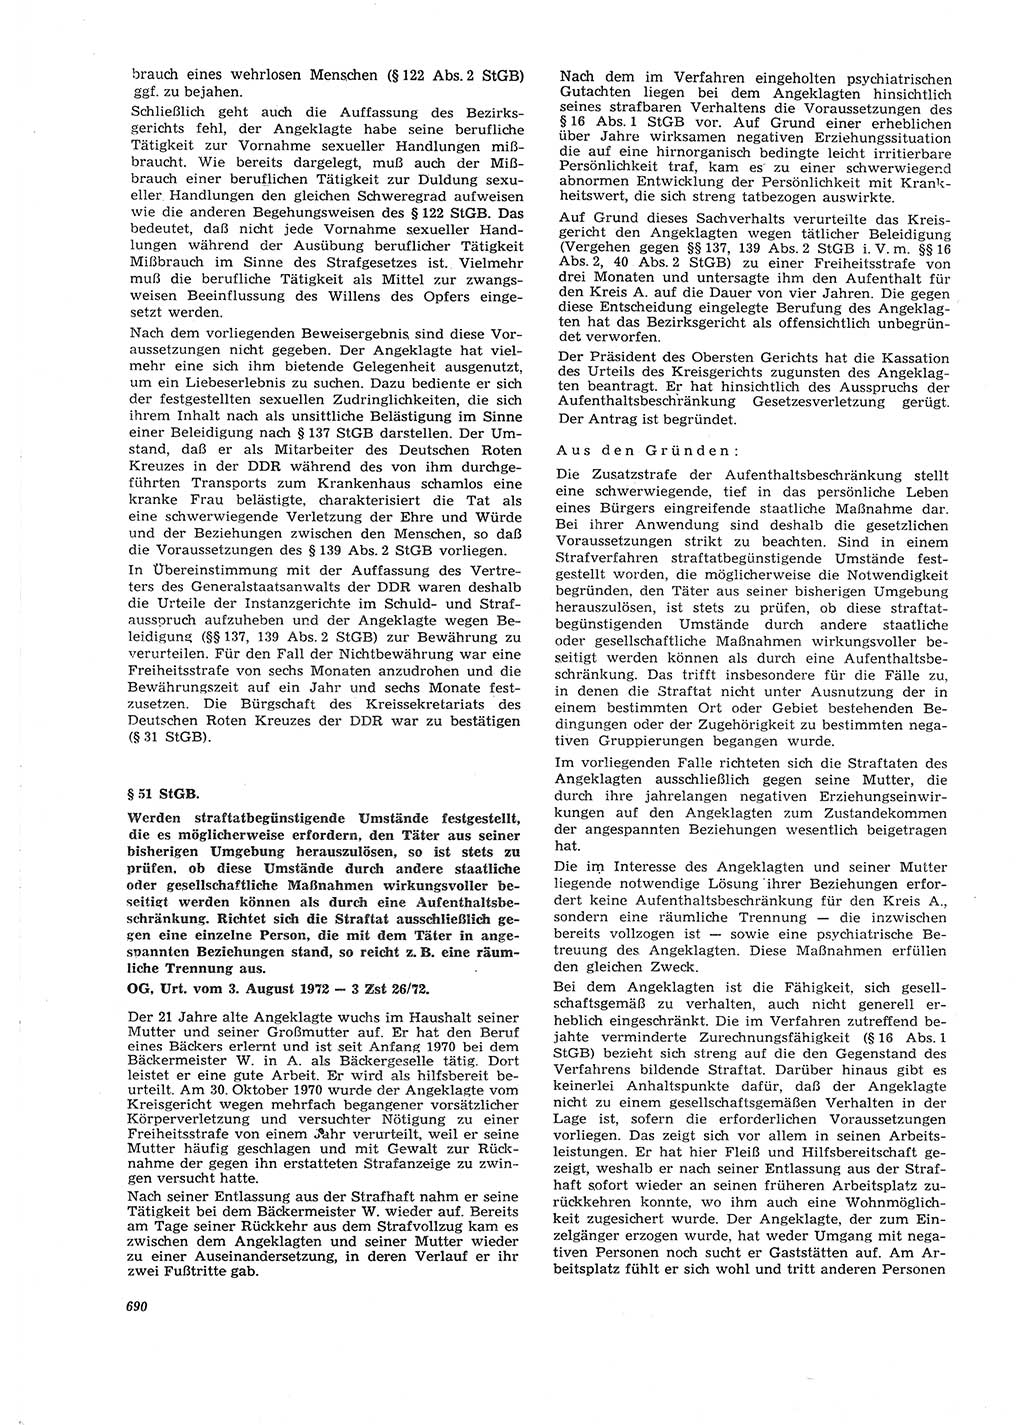 Neue Justiz (NJ), Zeitschrift für Recht und Rechtswissenschaft [Deutsche Demokratische Republik (DDR)], 26. Jahrgang 1972, Seite 690 (NJ DDR 1972, S. 690)